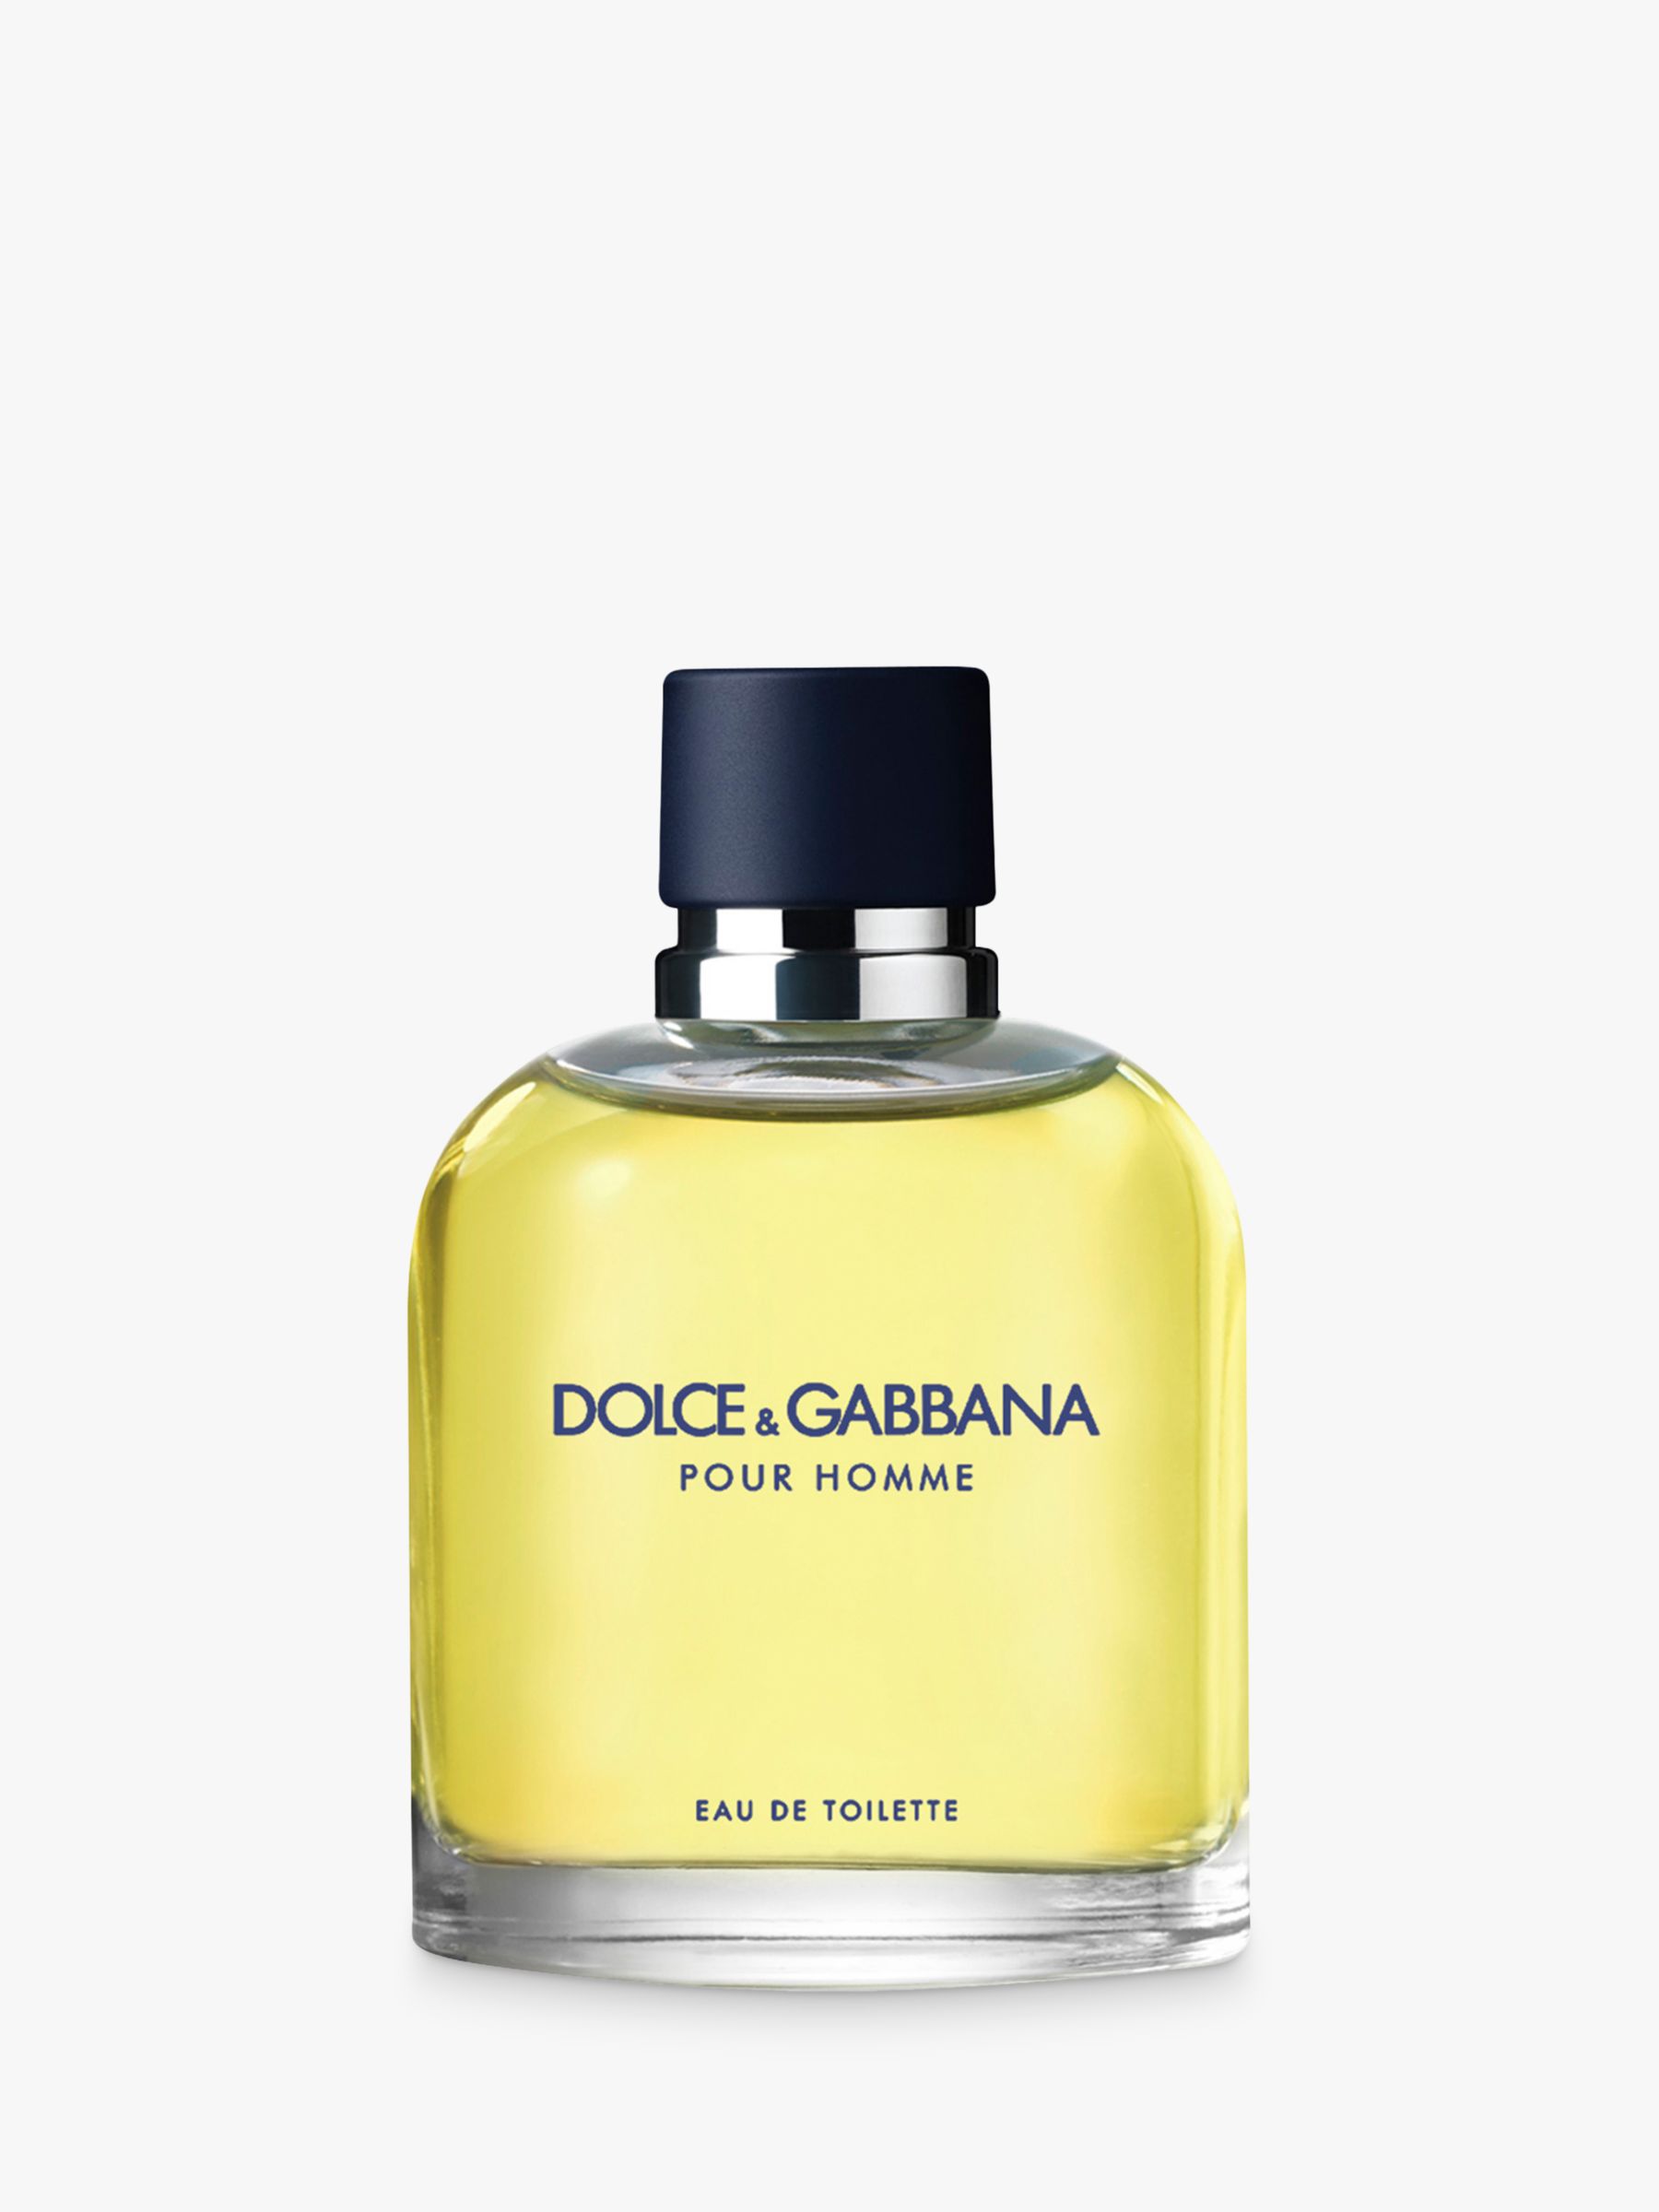 Dolce & Gabbana Pour Homme Eau de Toilette, 125ml at John Lewis & Partners